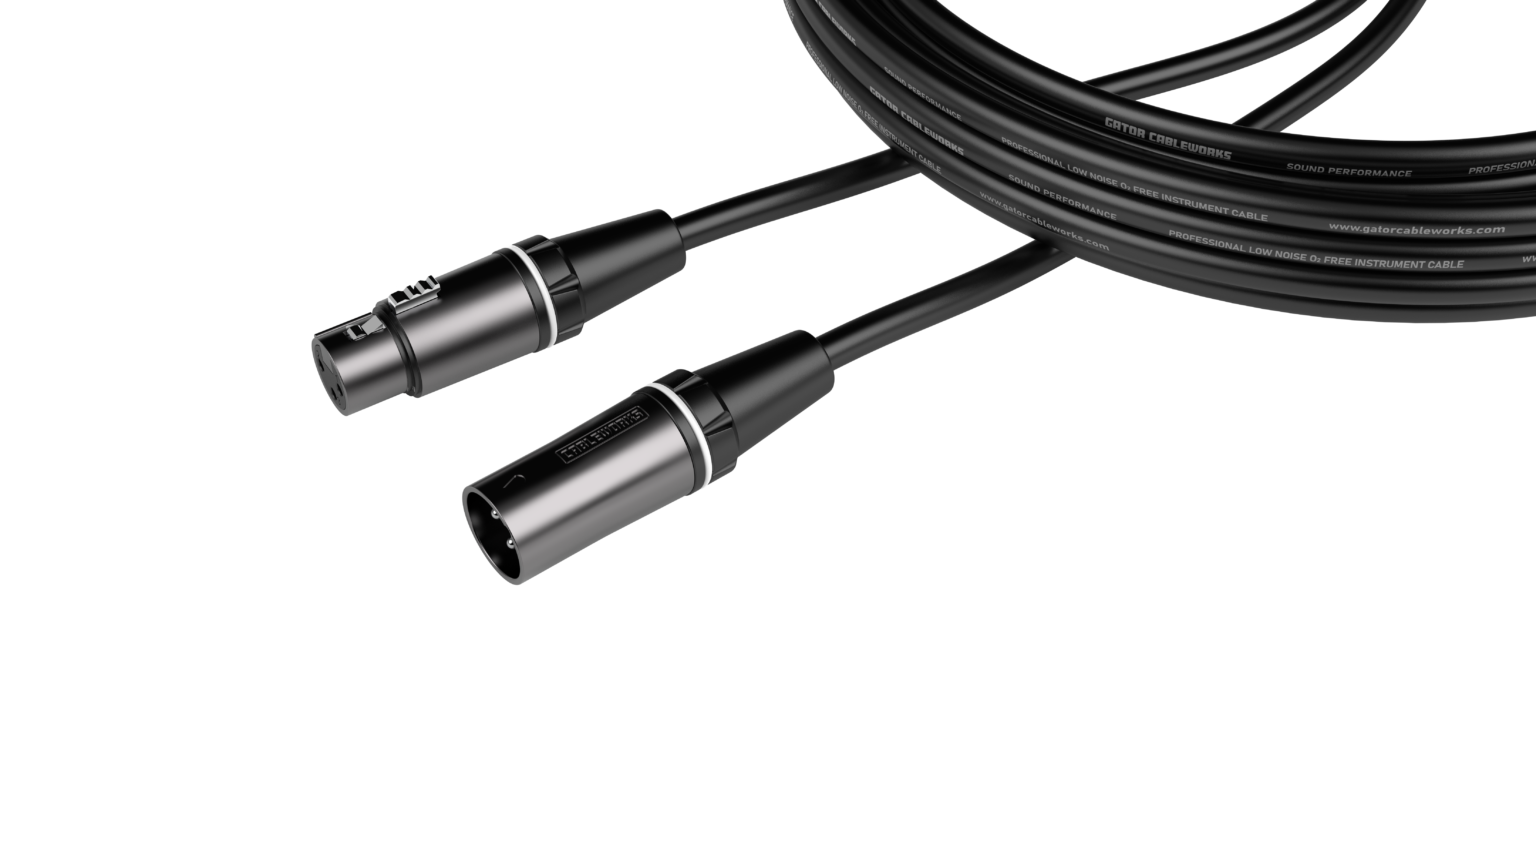 GCWC-XLR-03 3 Foot XLR Microphone Cable